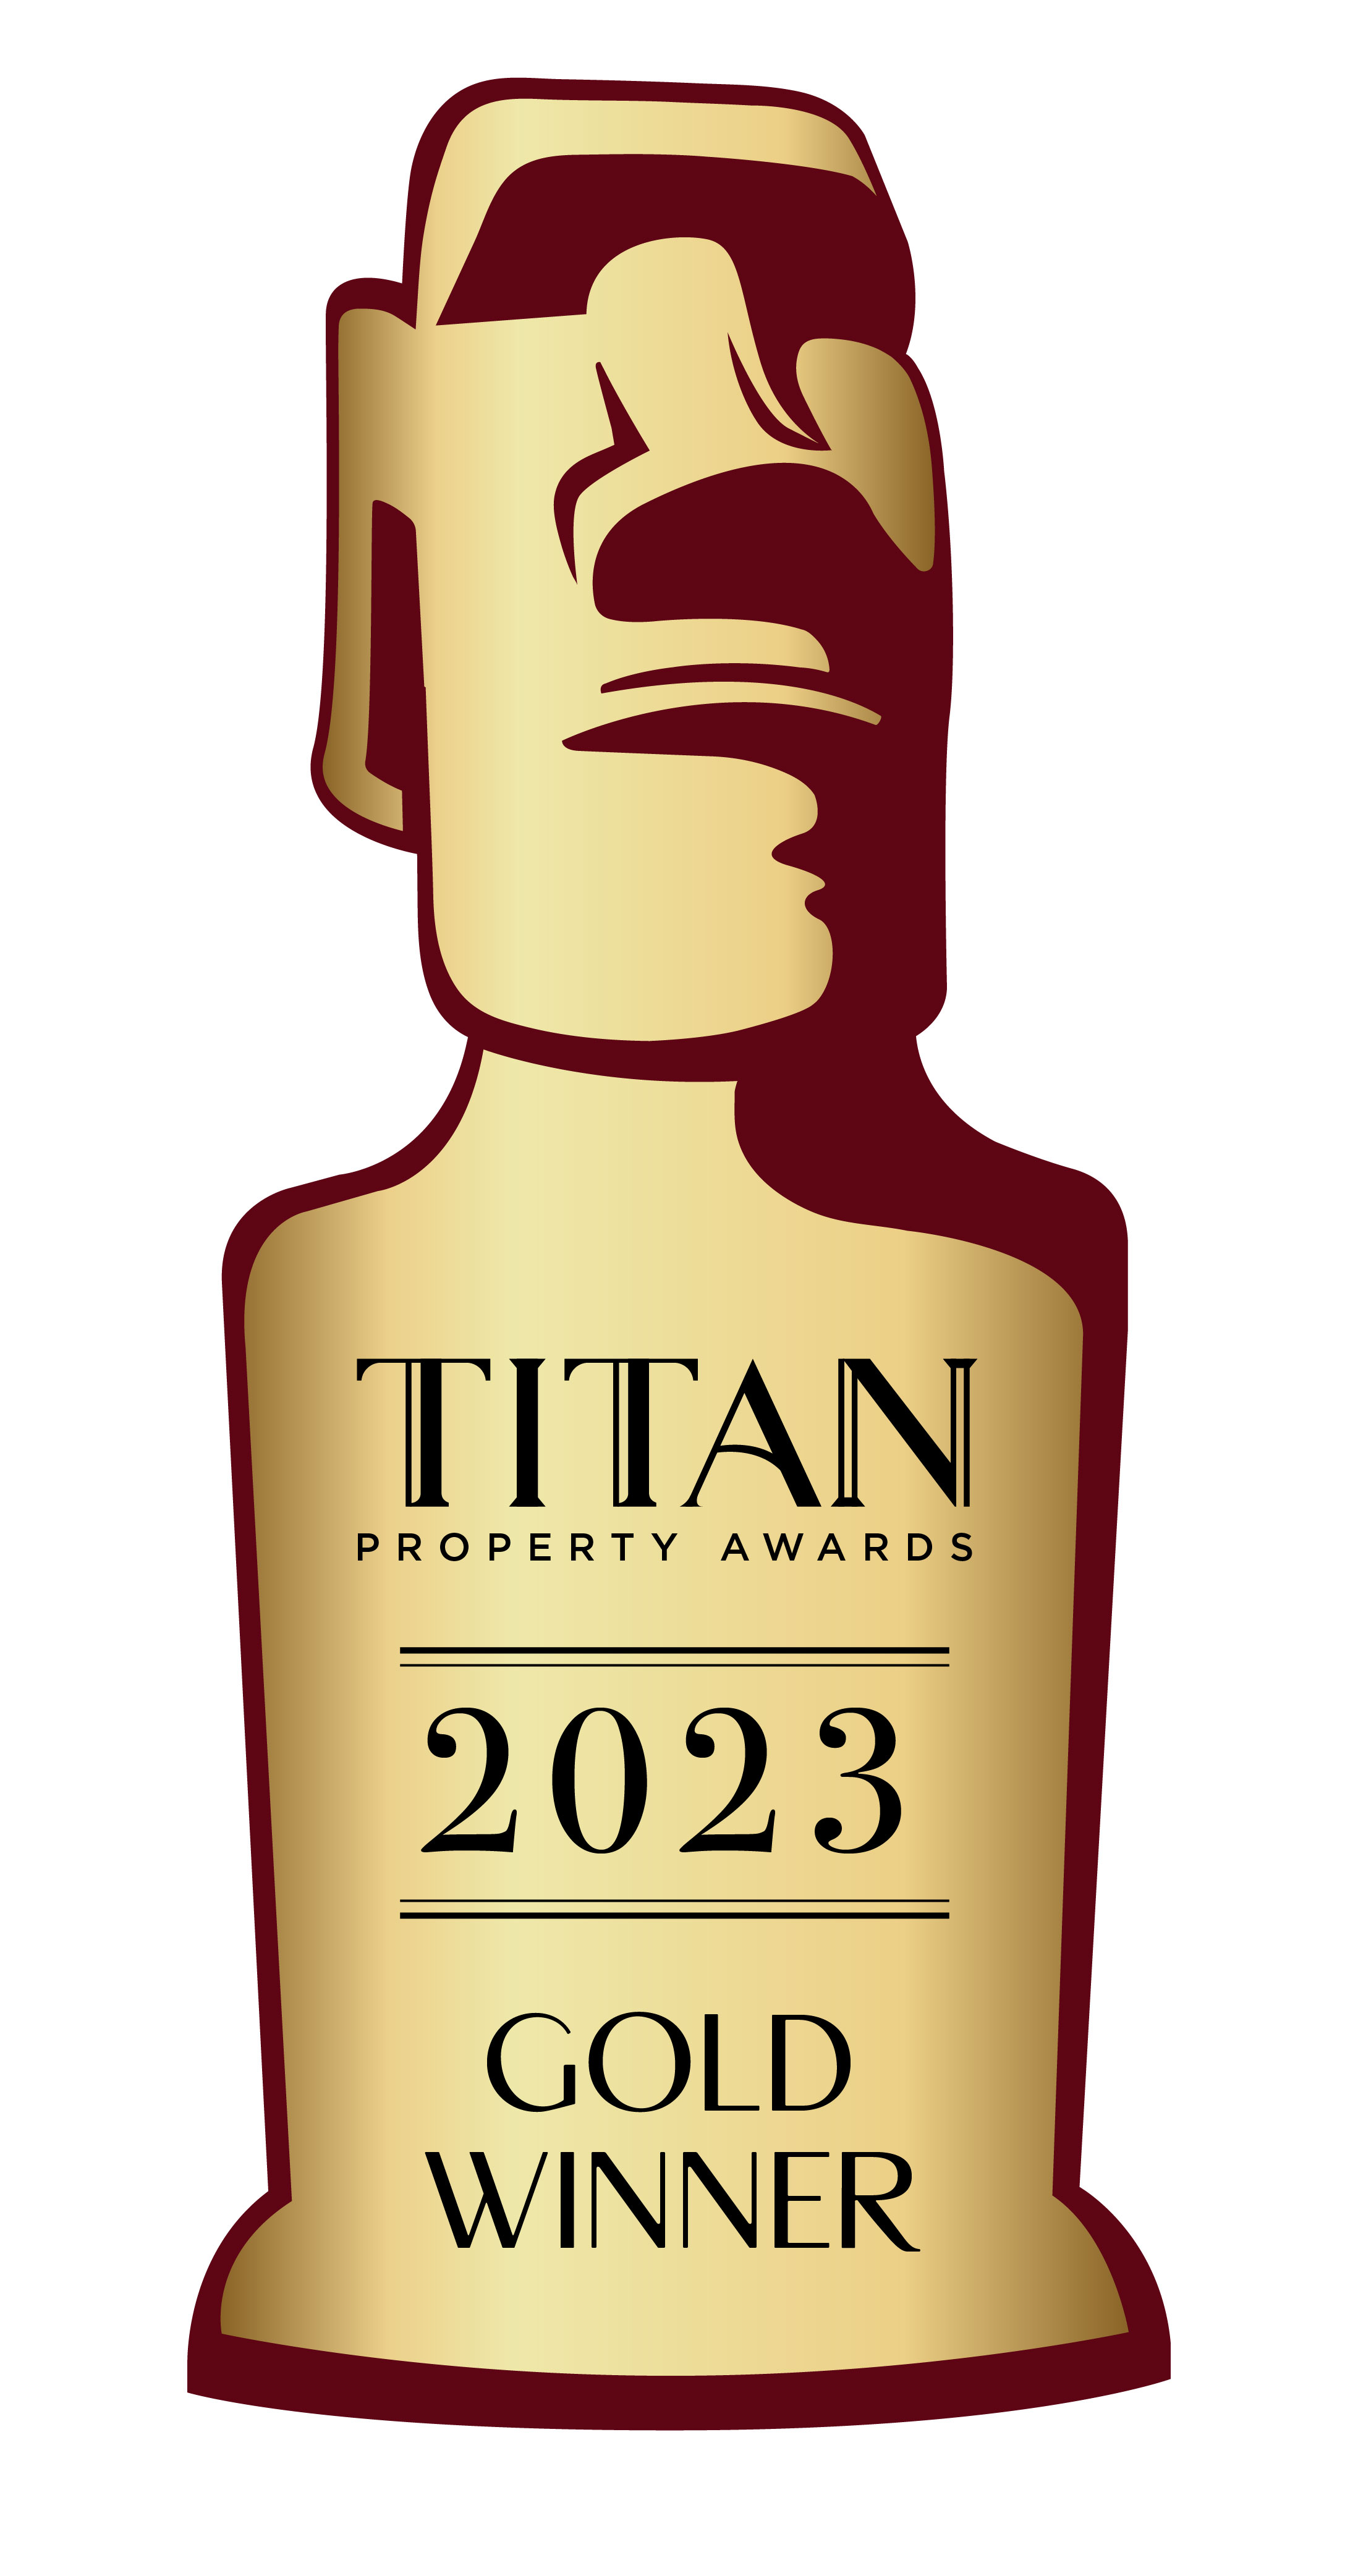 TITAN Property Awards 2023